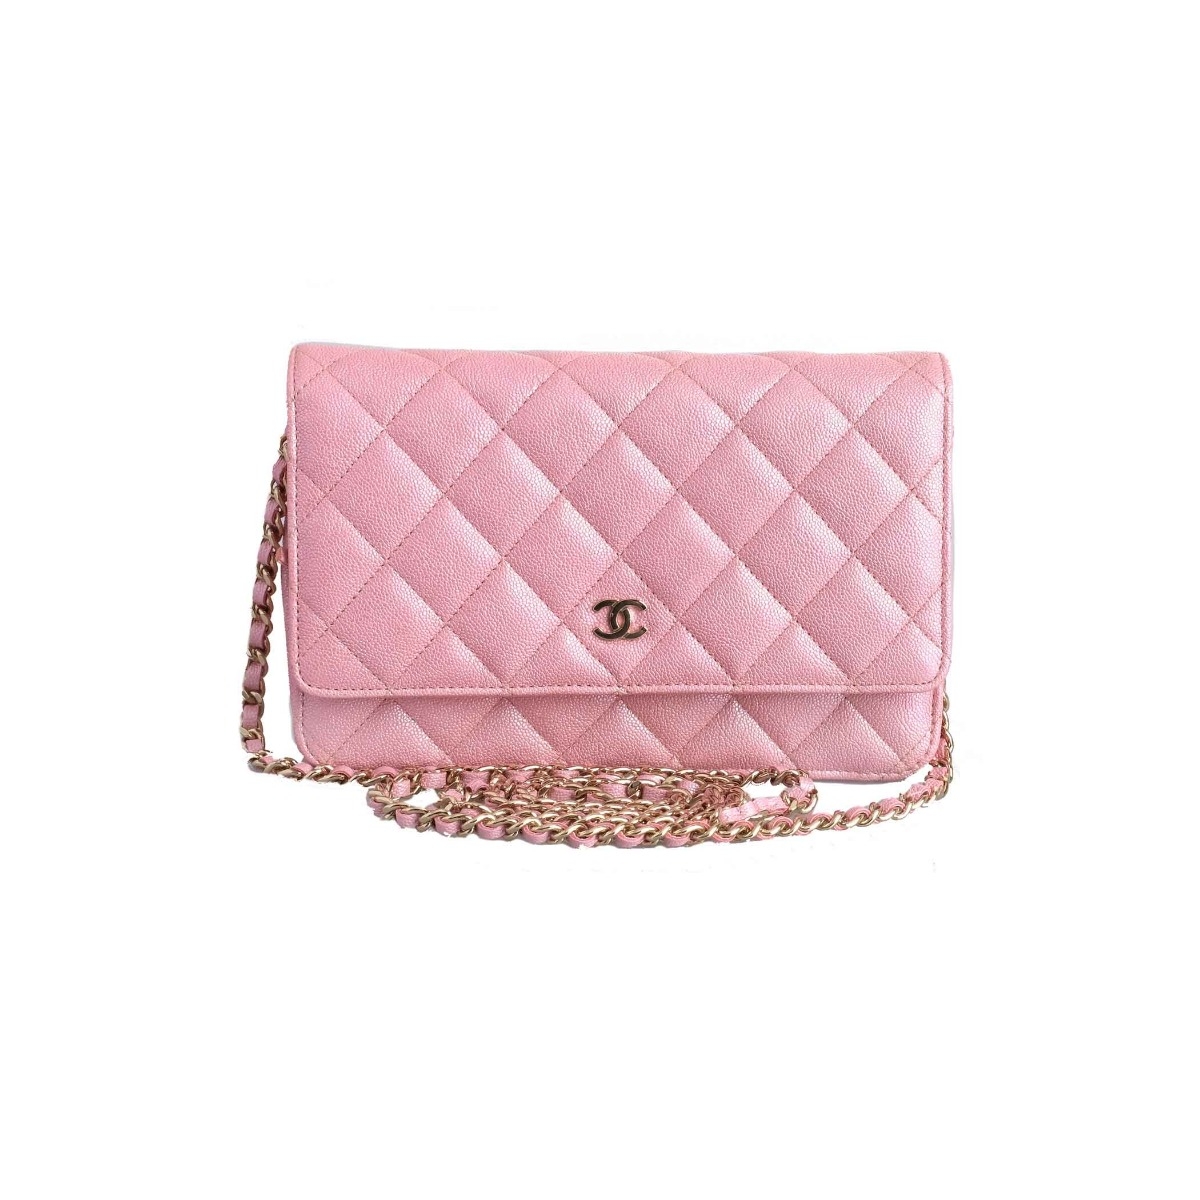 chanel wallet pink women